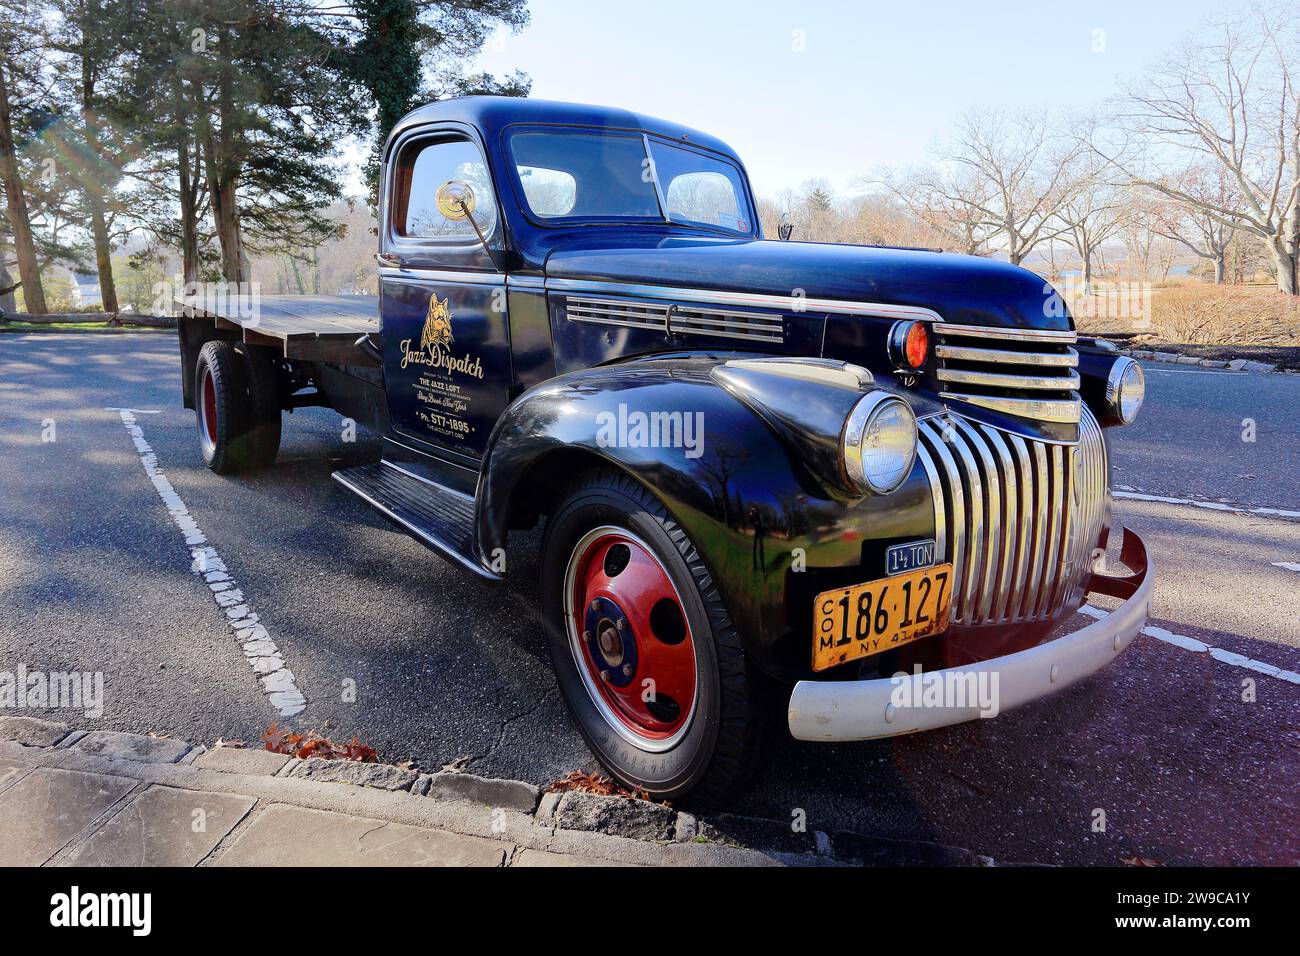 Camioneta vieja Stony Brook Long Island NY Foto de stock